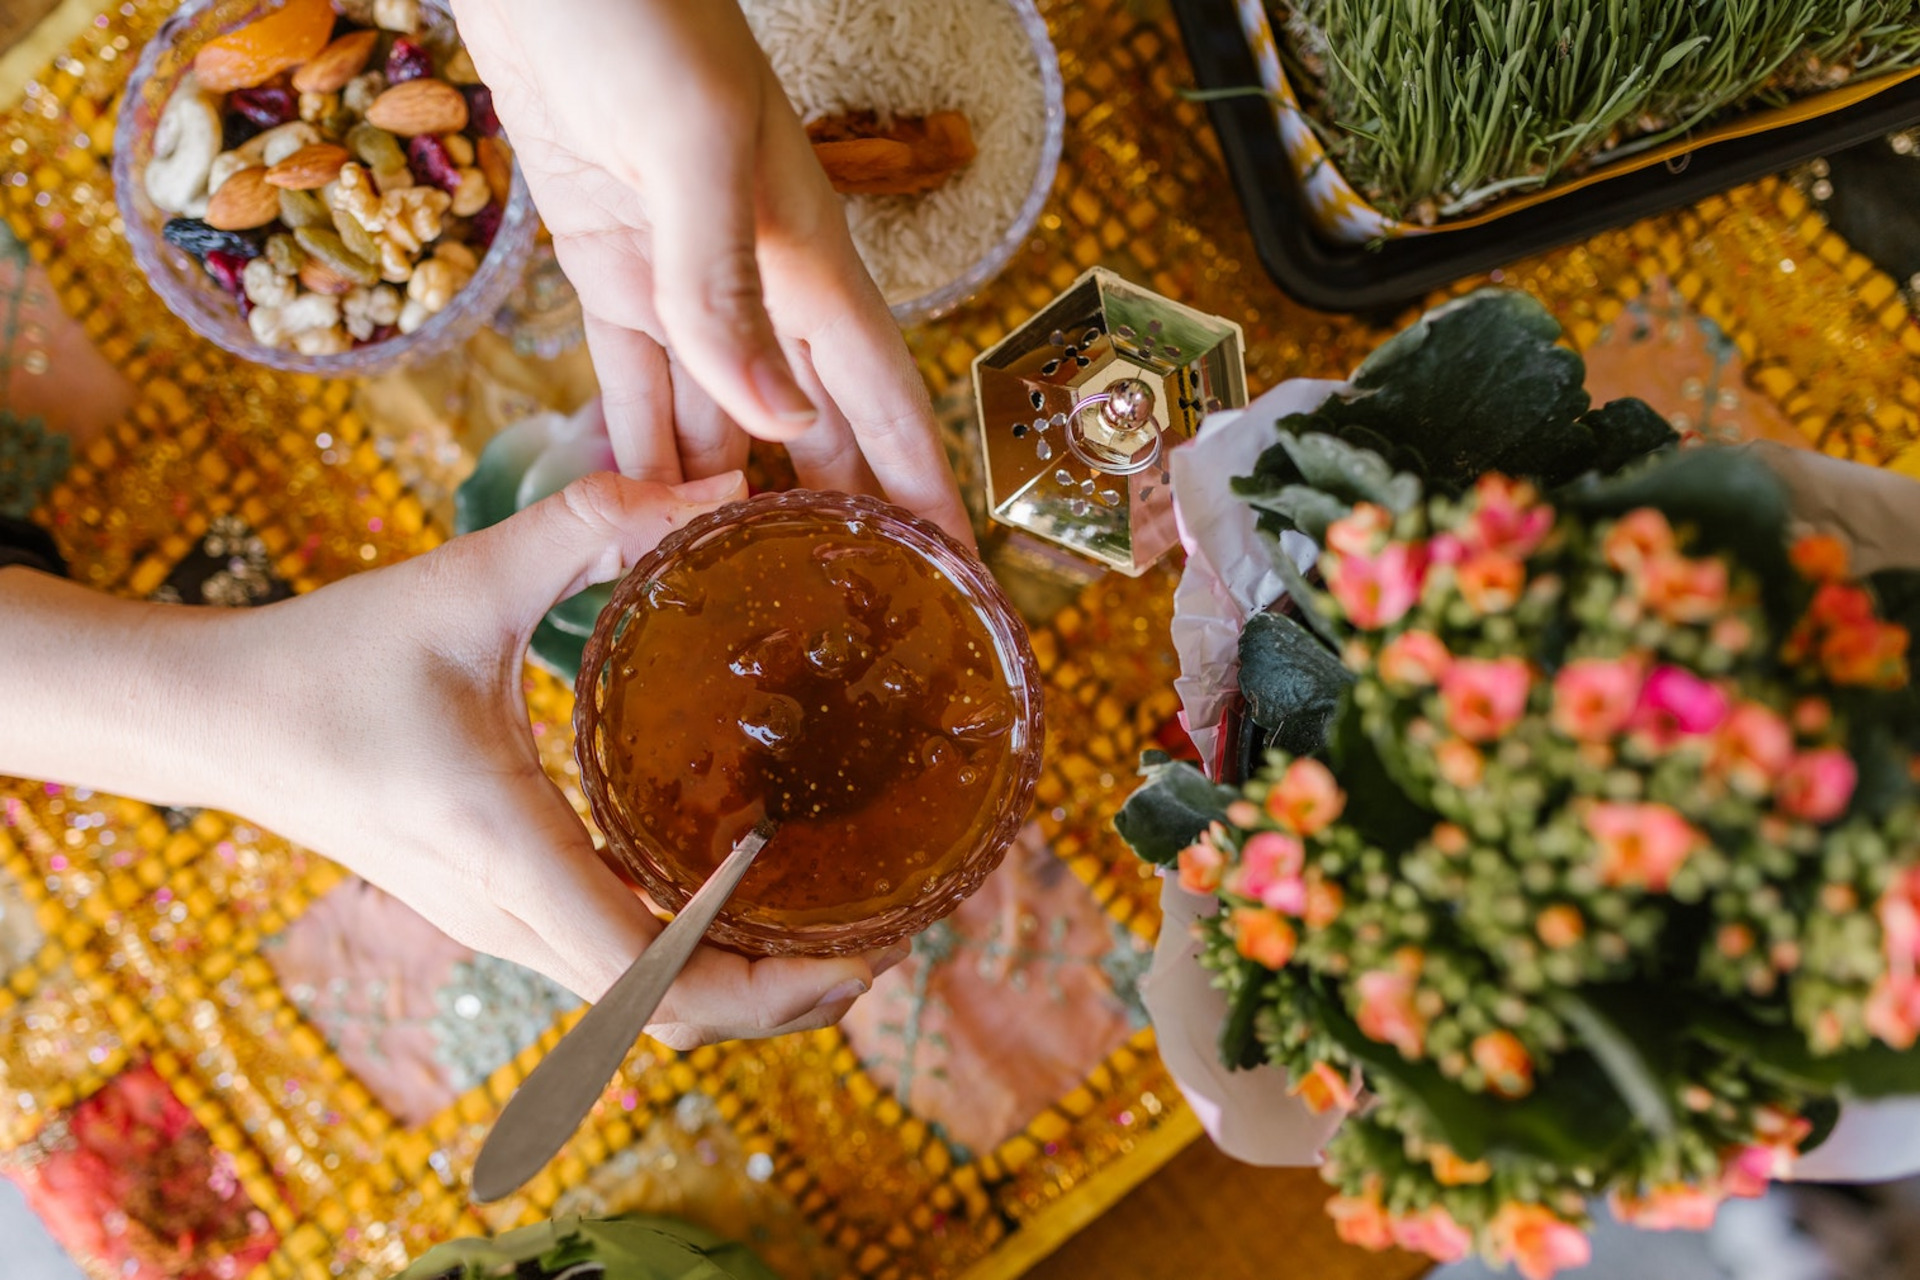 Auf einem Tisch mit einer bunten Tischdecke steht eine Blume, sowie Gefäße mit Lebensmitteln, darunter Nüsse und Reis. Zwei Hände halten eine Schale, in die ein Gelee gefüllt ist, darin liegt ein Löffel.